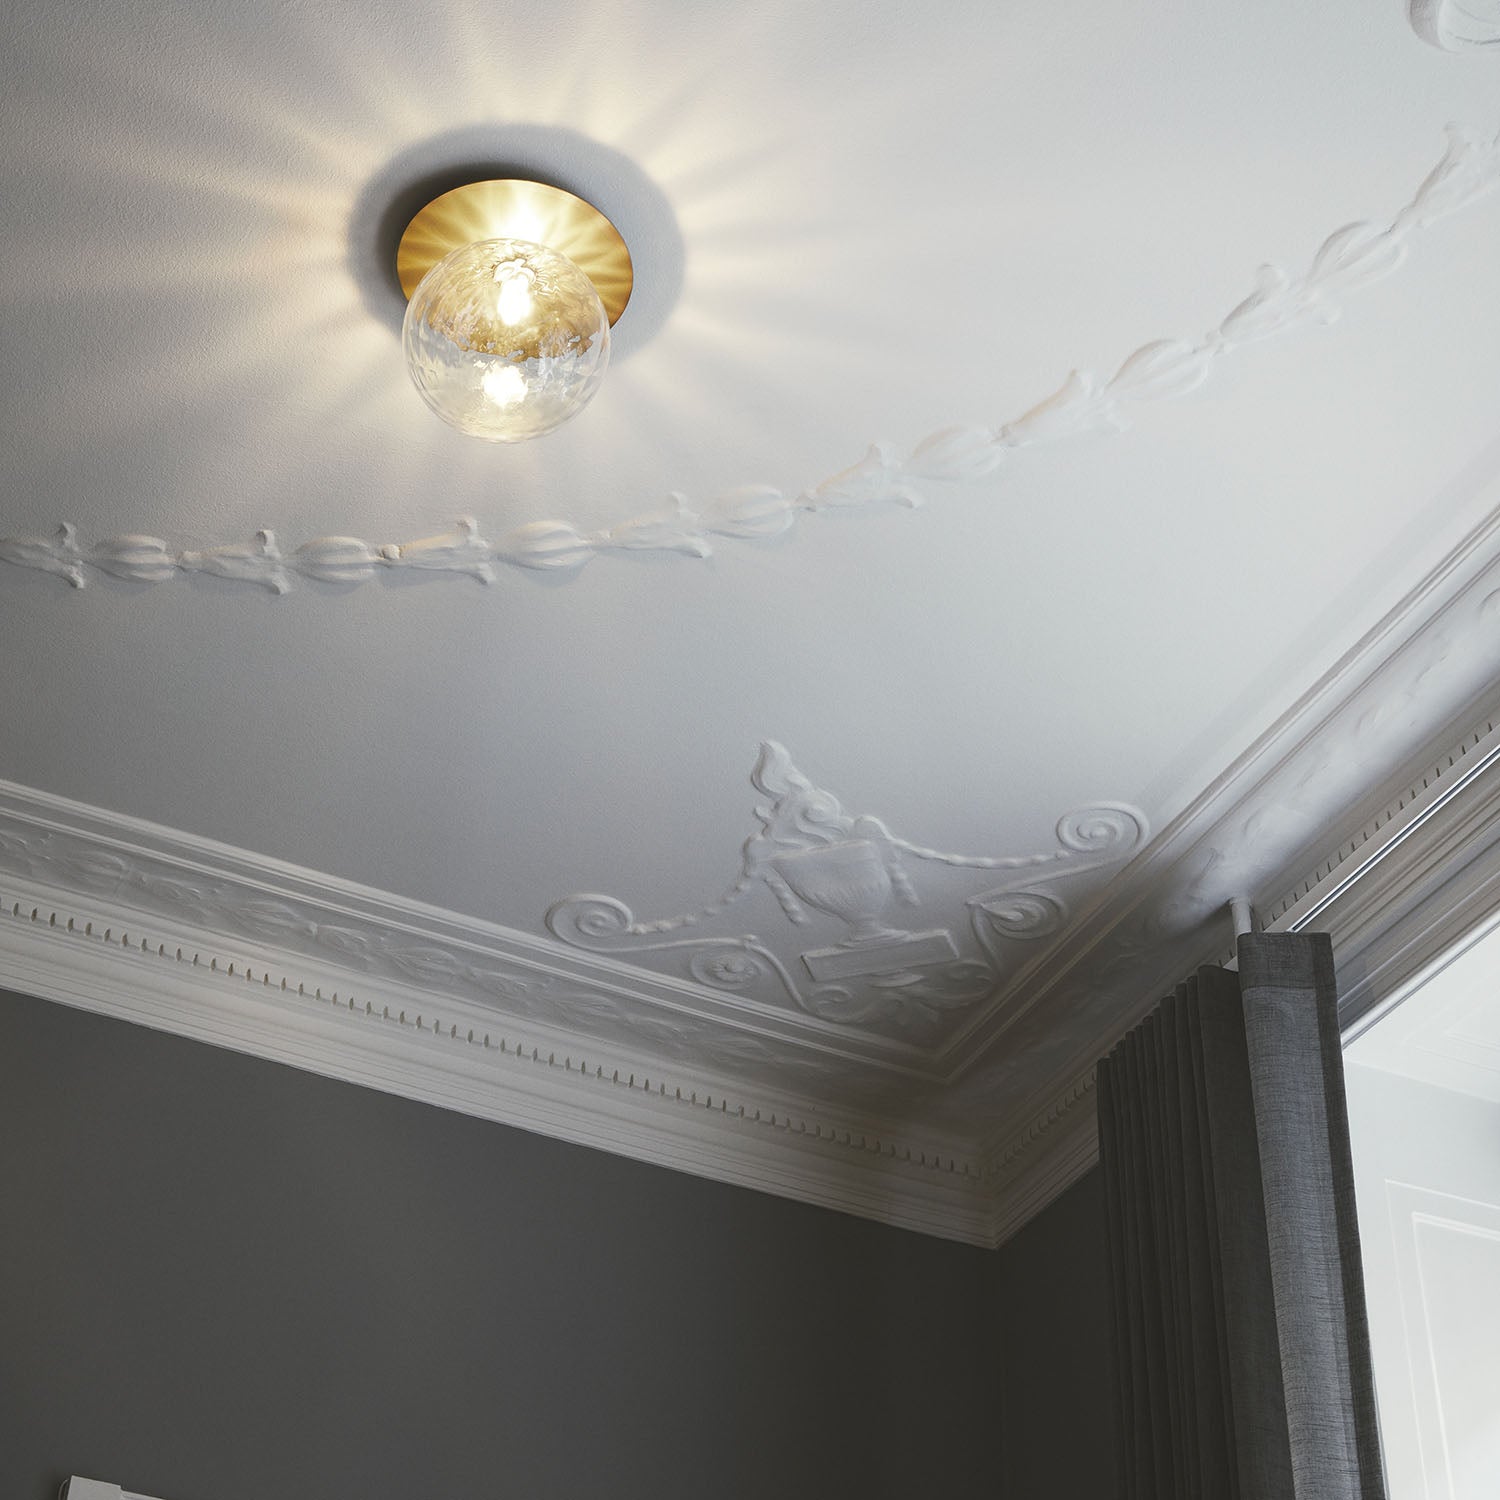 LIILA 1 Optic Ceiling - Elegant luxury designer ceiling light